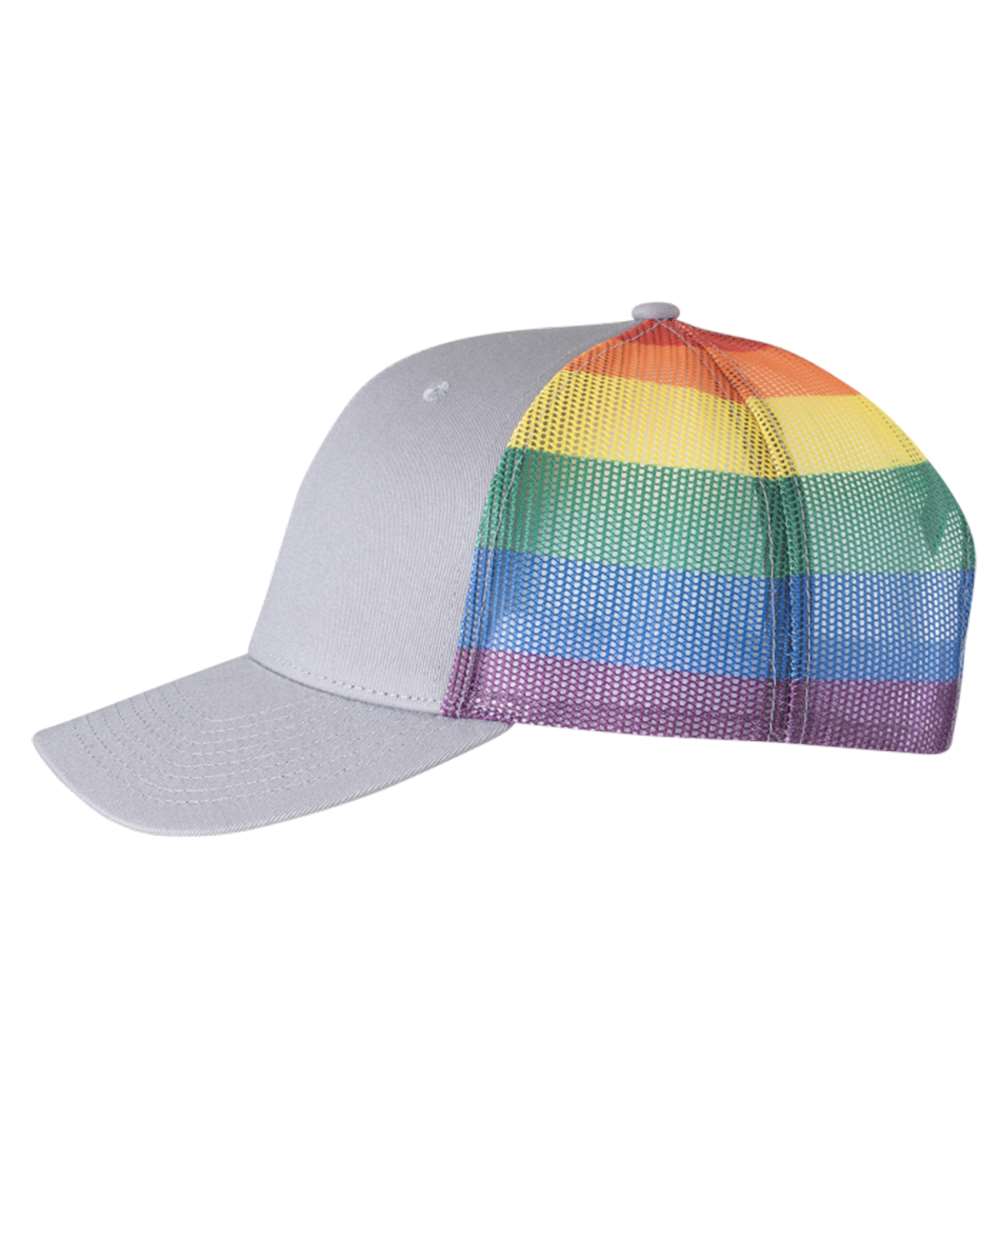 Pink/Rainbow Trucker Hat